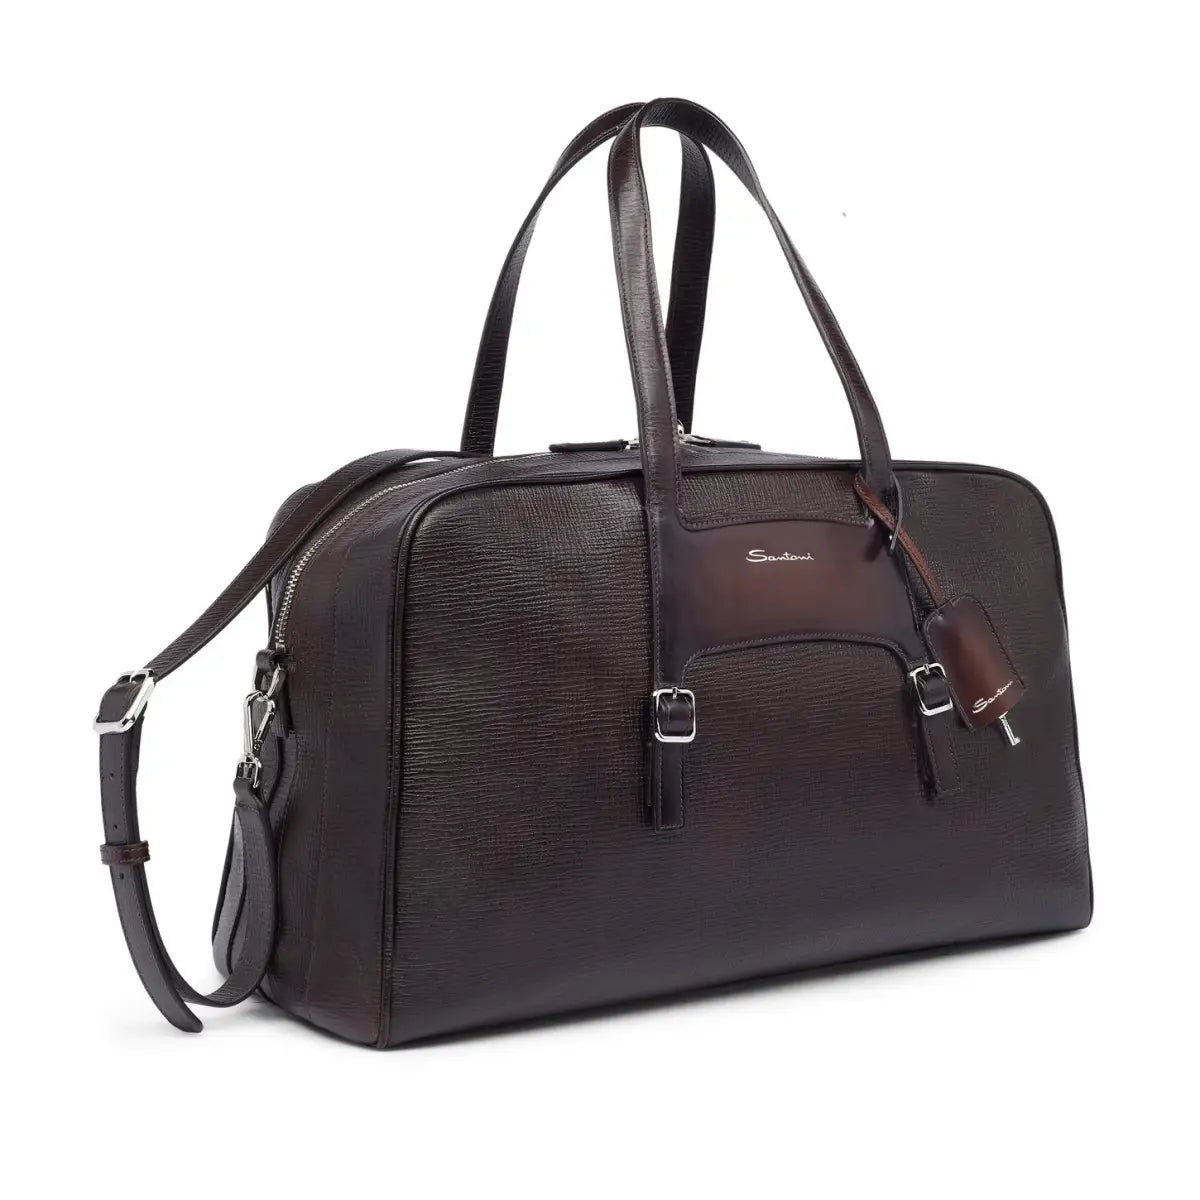 Brown Embossed Leather Weekend Bag